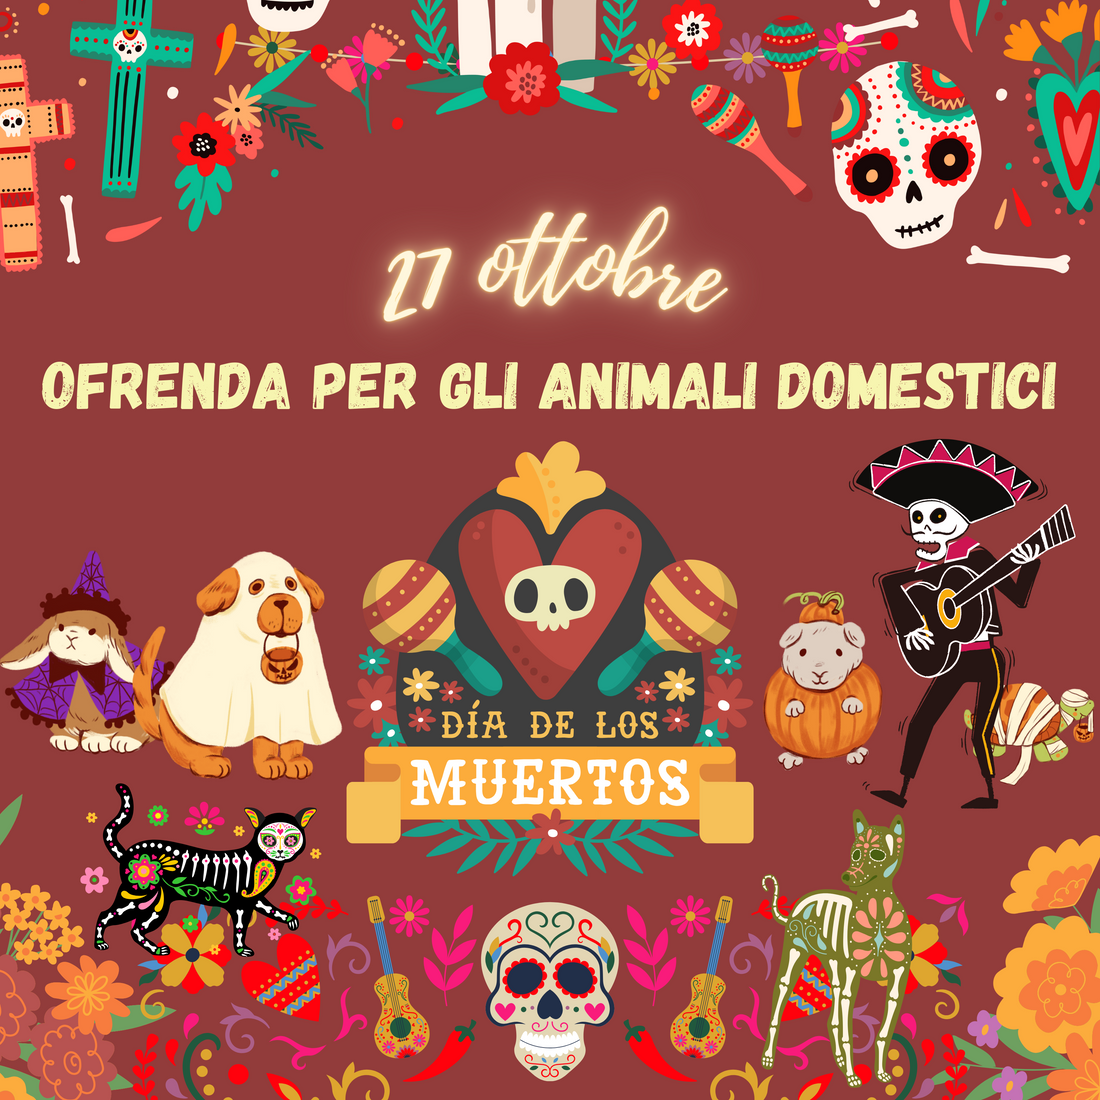 27 Ottobre: Dia de Los Muertos, Ofrenda per ricordare gli animali domestici che non ci sono più